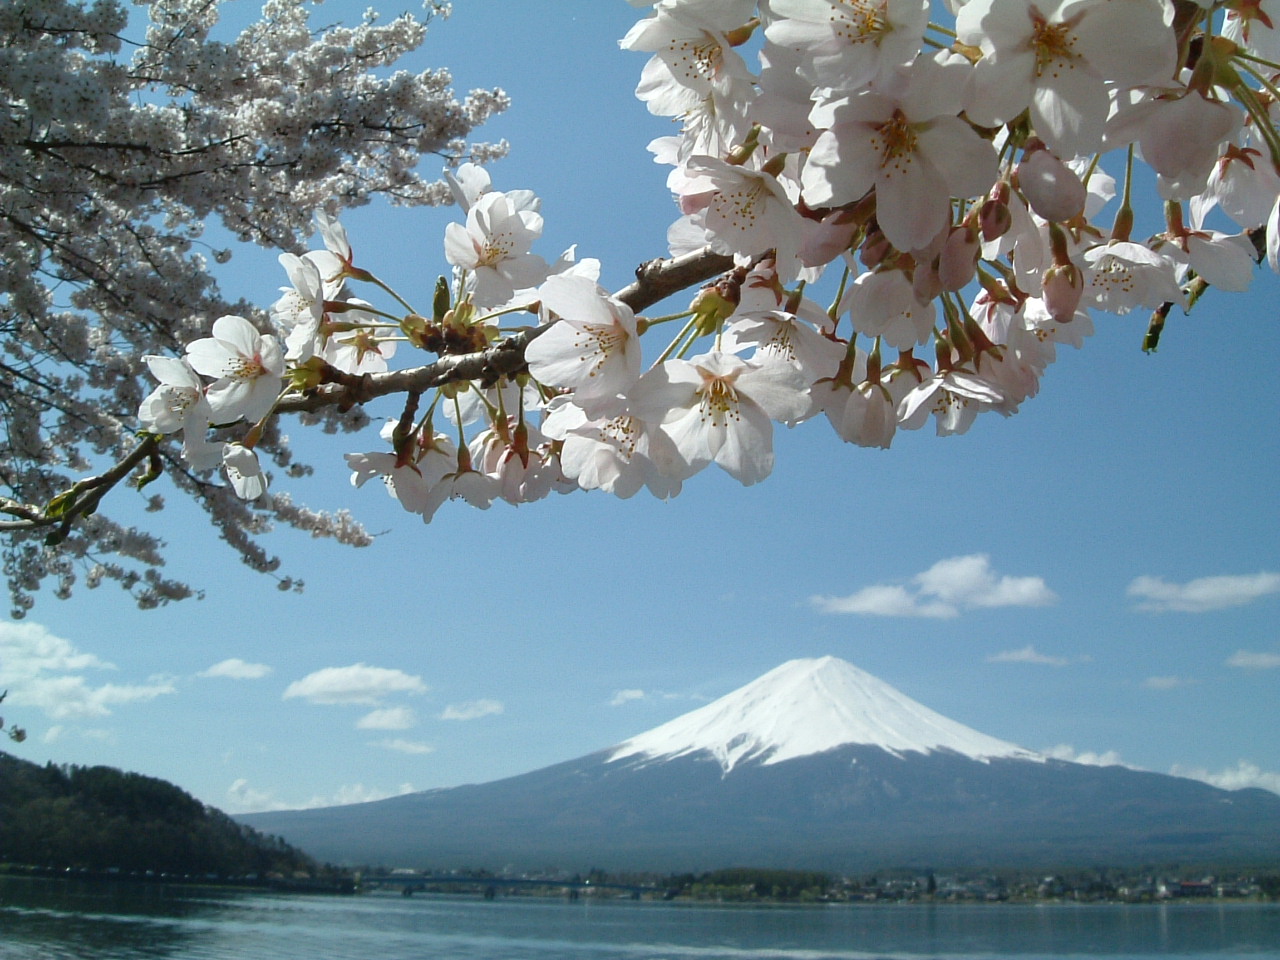 Mt. Fuji and lake Kawaguchi in Spring 